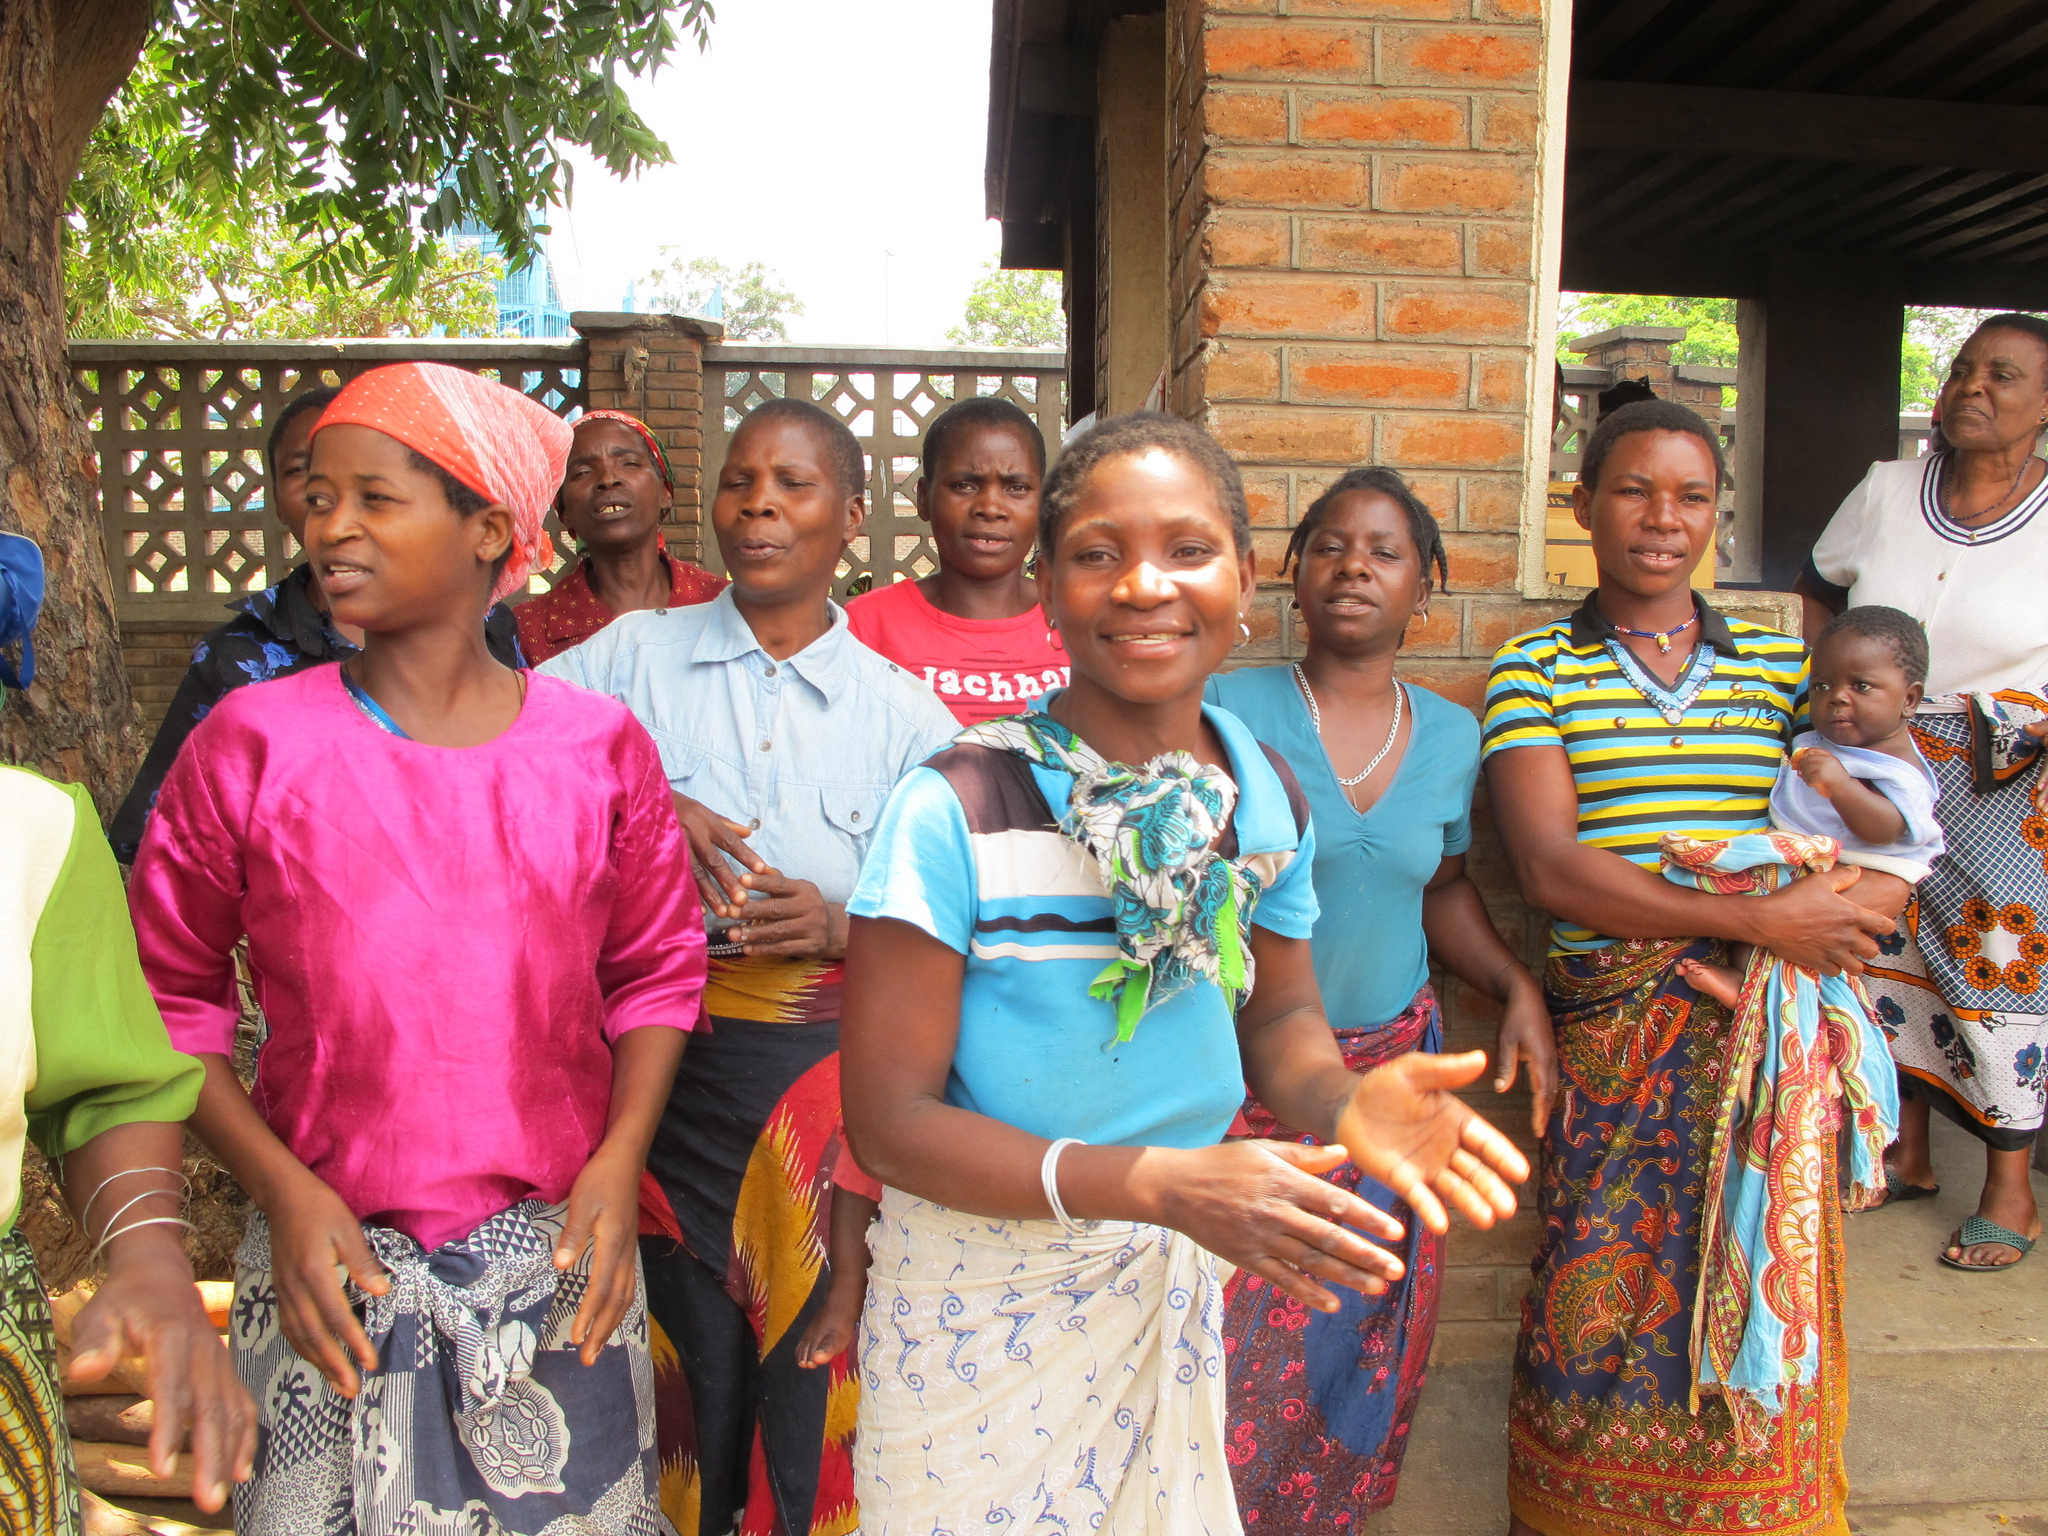 Malawische zorg stelt vrouwen centraal, maar dat heeft ook nadelen